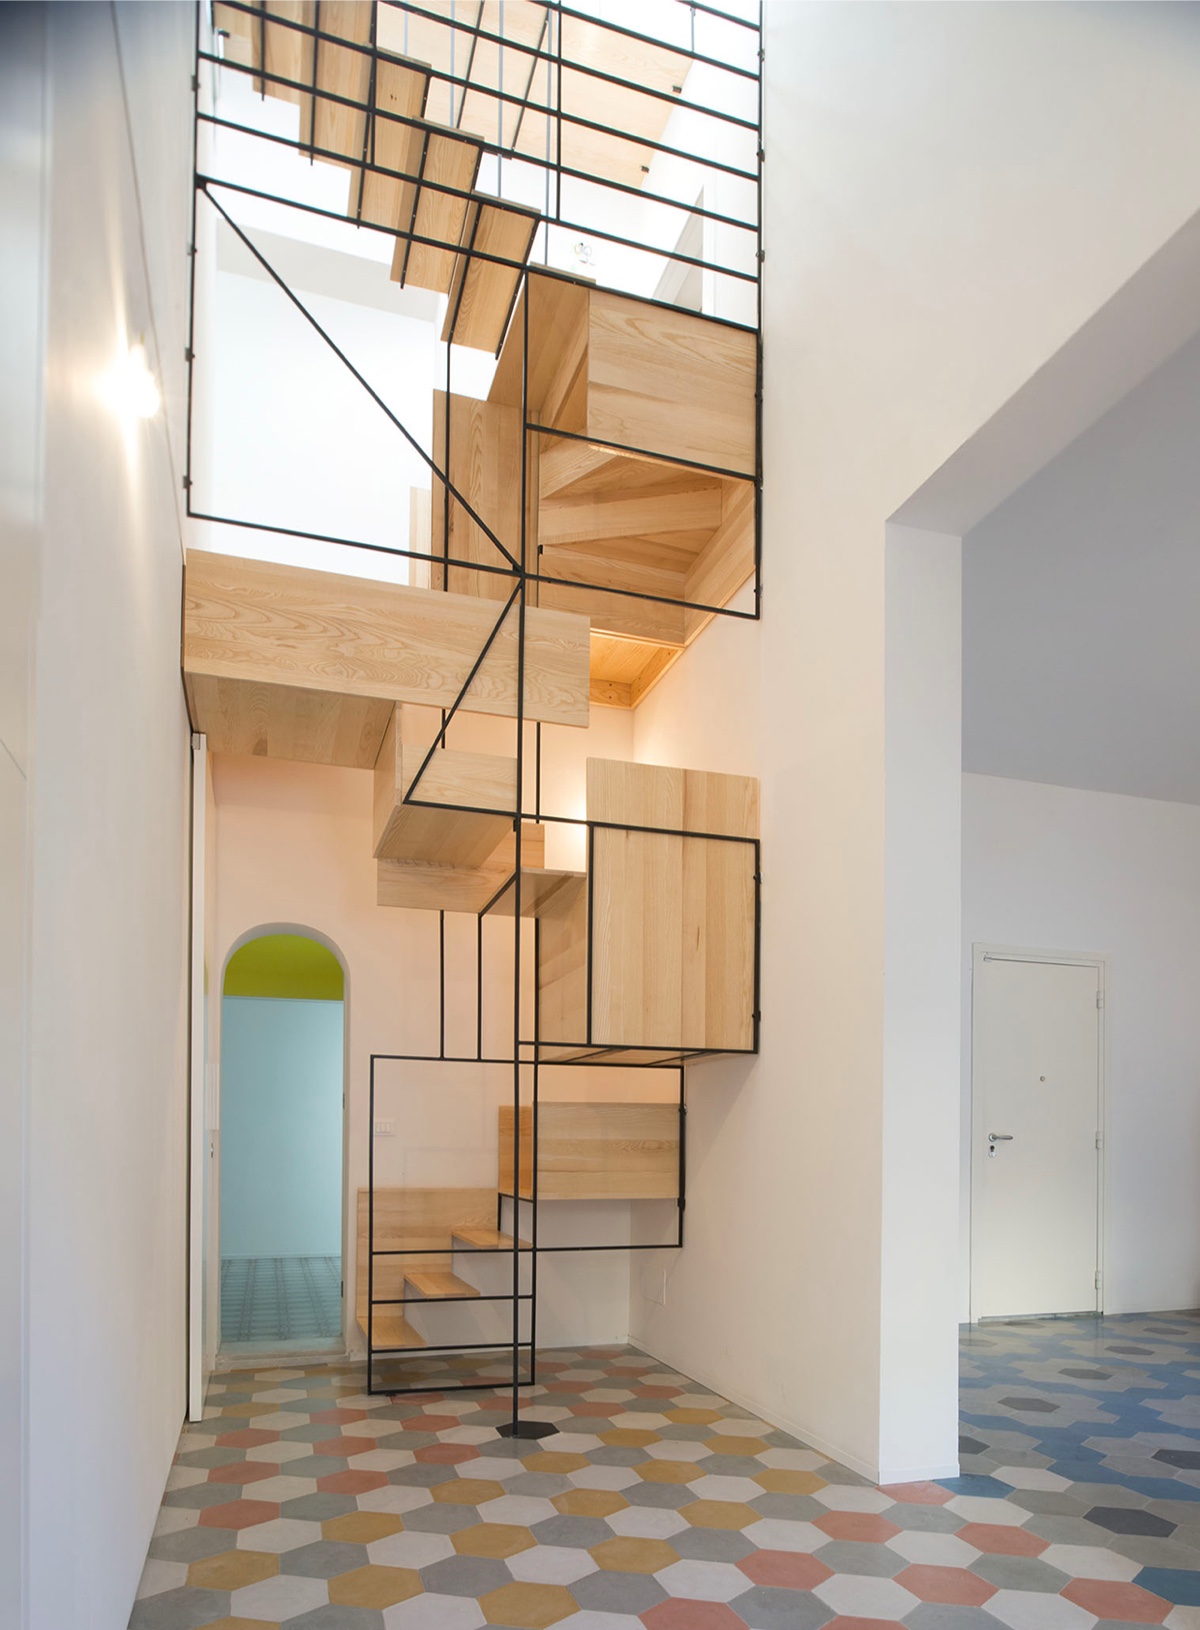 51个前卫创意的楼梯设计方案